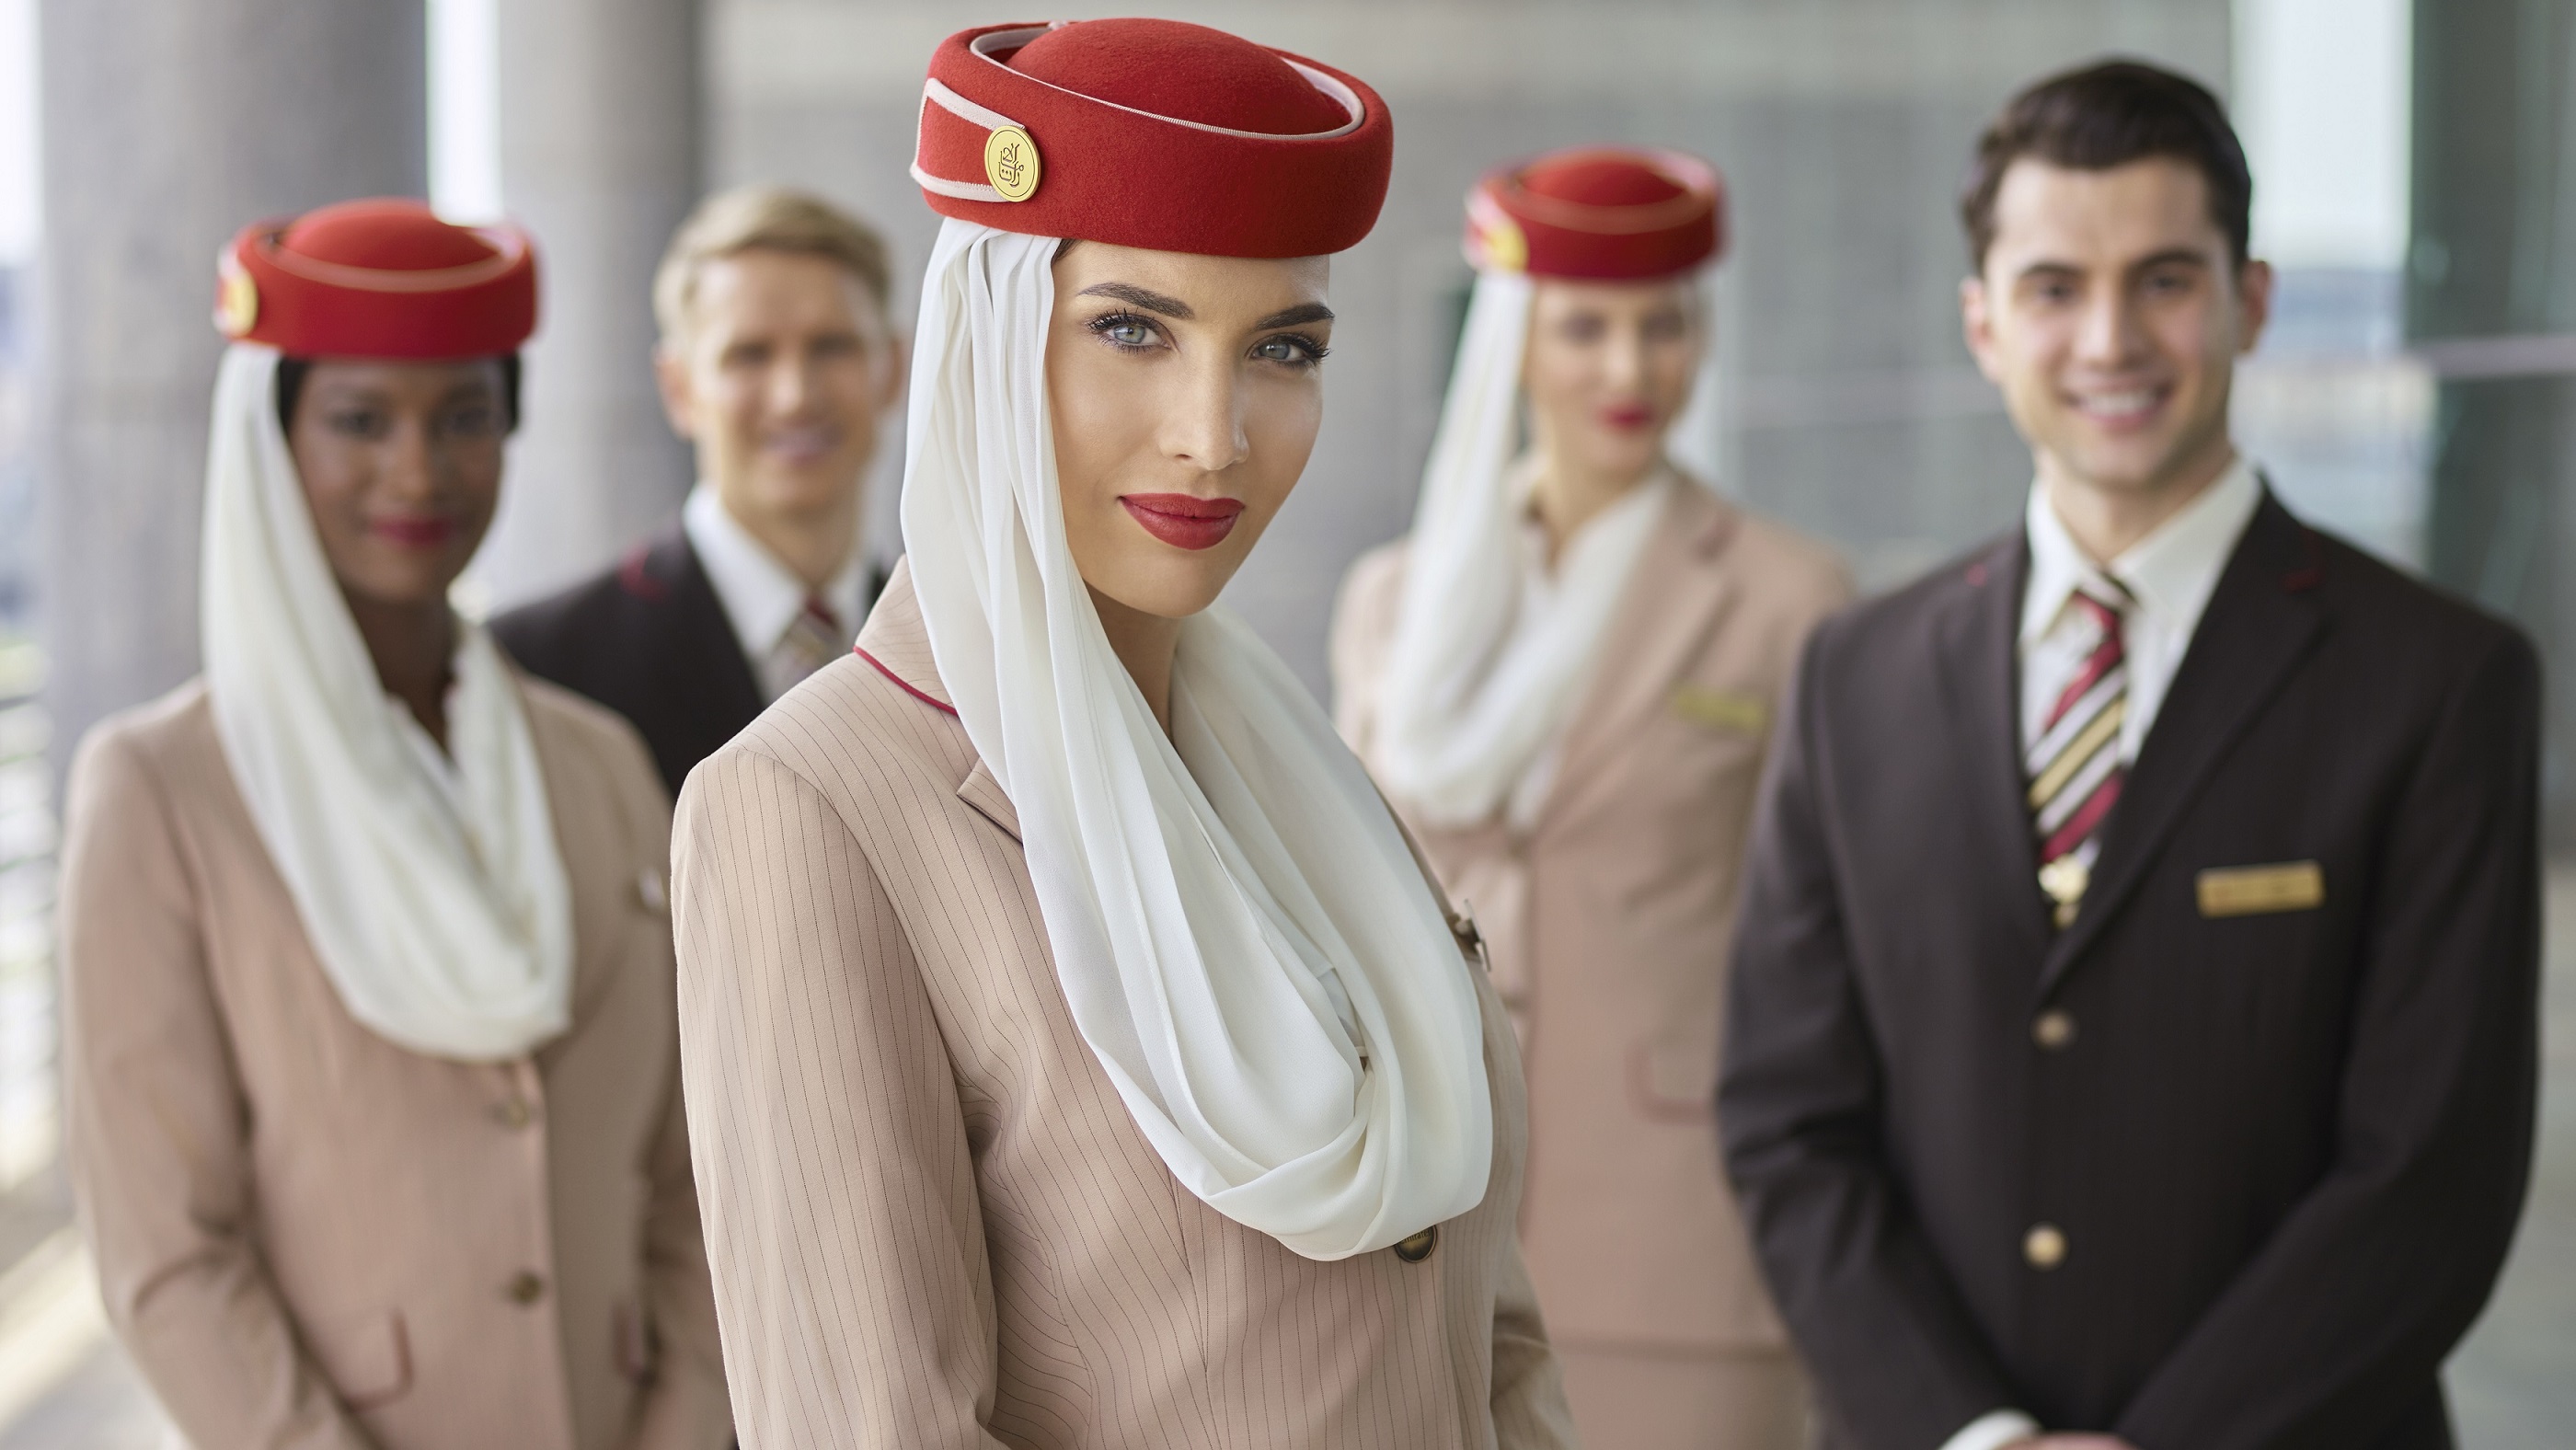 Chtěli jste někdy být letuška či steward? Emirates nabízí příležitost splnit si sny